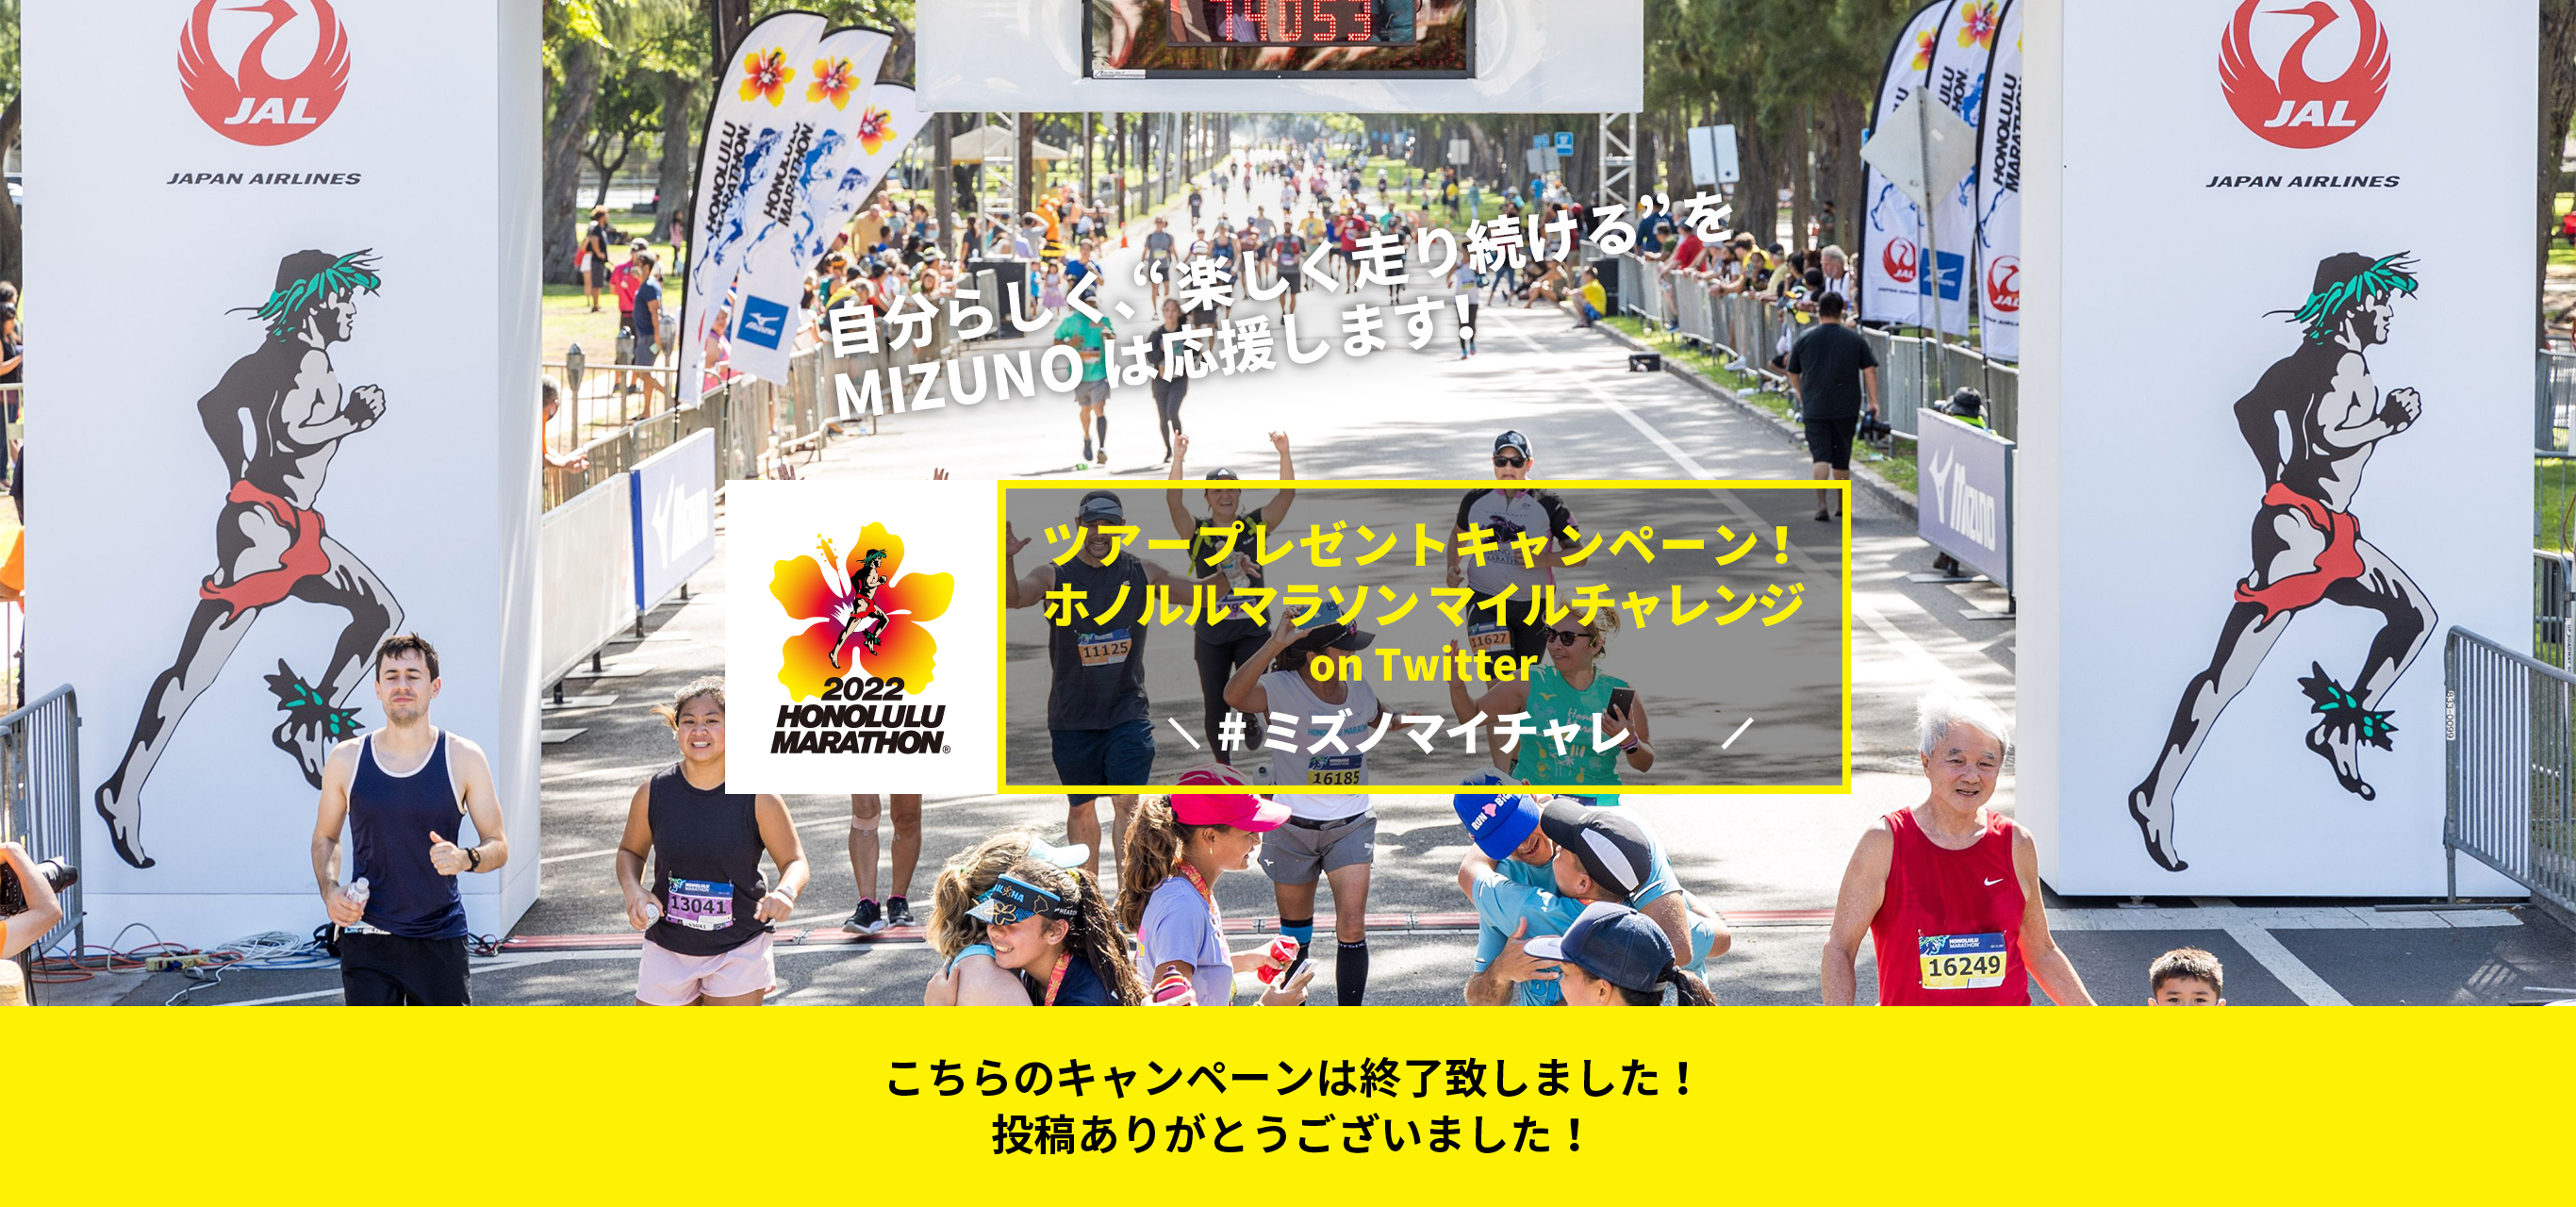 FOR EVERY RUN 自分らしく、楽しく走り続けるをMIZUNOは応援します! ツアープレゼントキャンペーン!ホノルルマラソンマイルチャレンジ on Twitter #ミズノマイチャレ